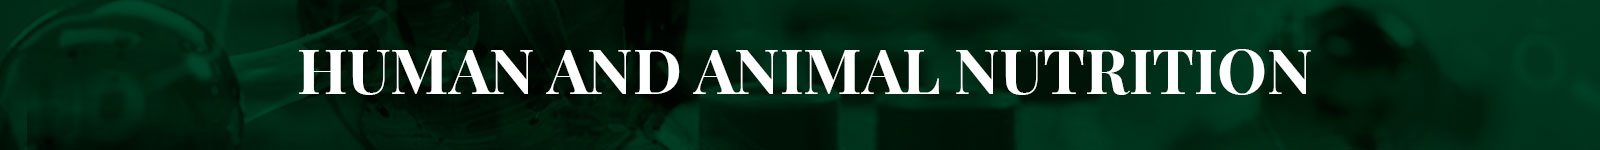 Human and Animal Nutrition